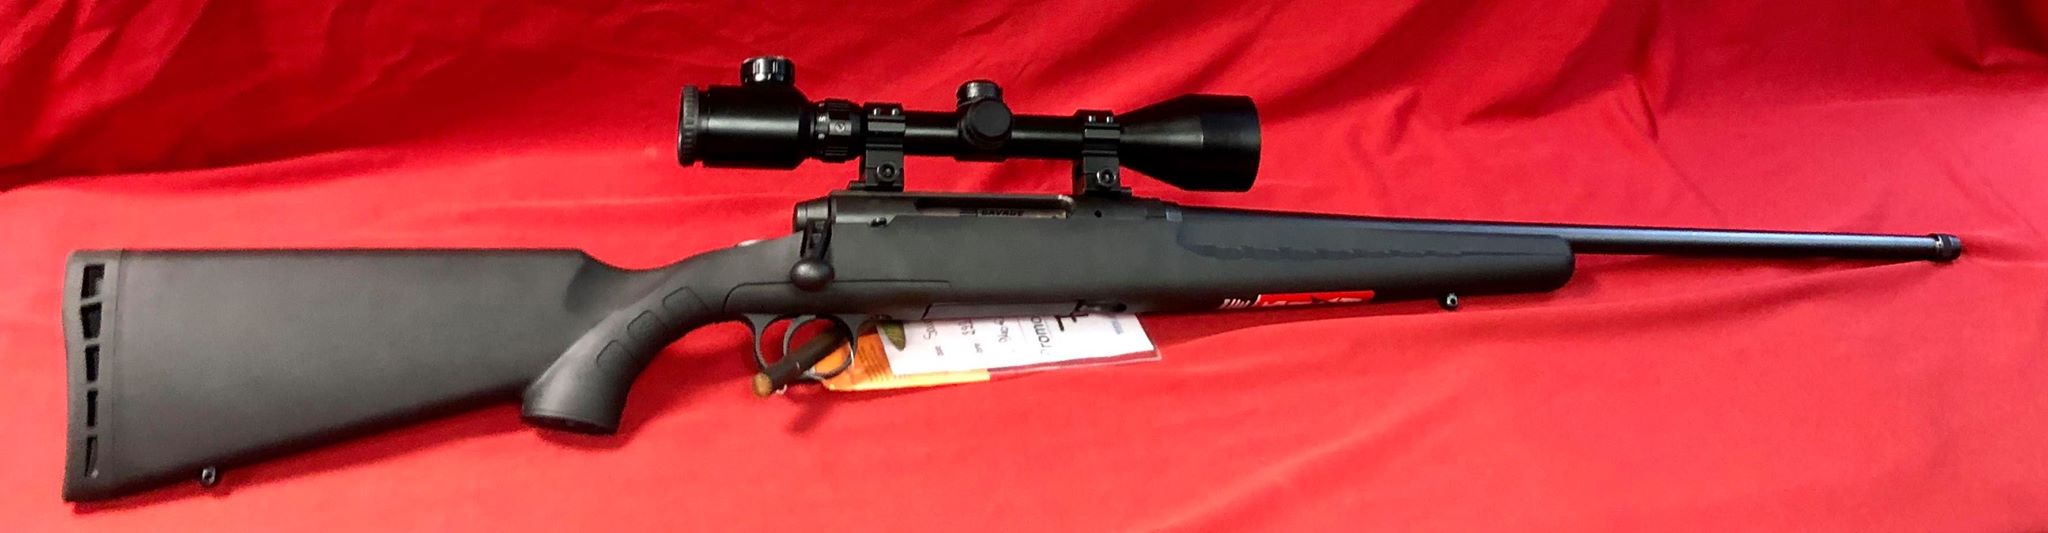 Carabine Savage calibre 222 composite vendu avec une lunette lensolux 3x9x50 avec réticule lumineux